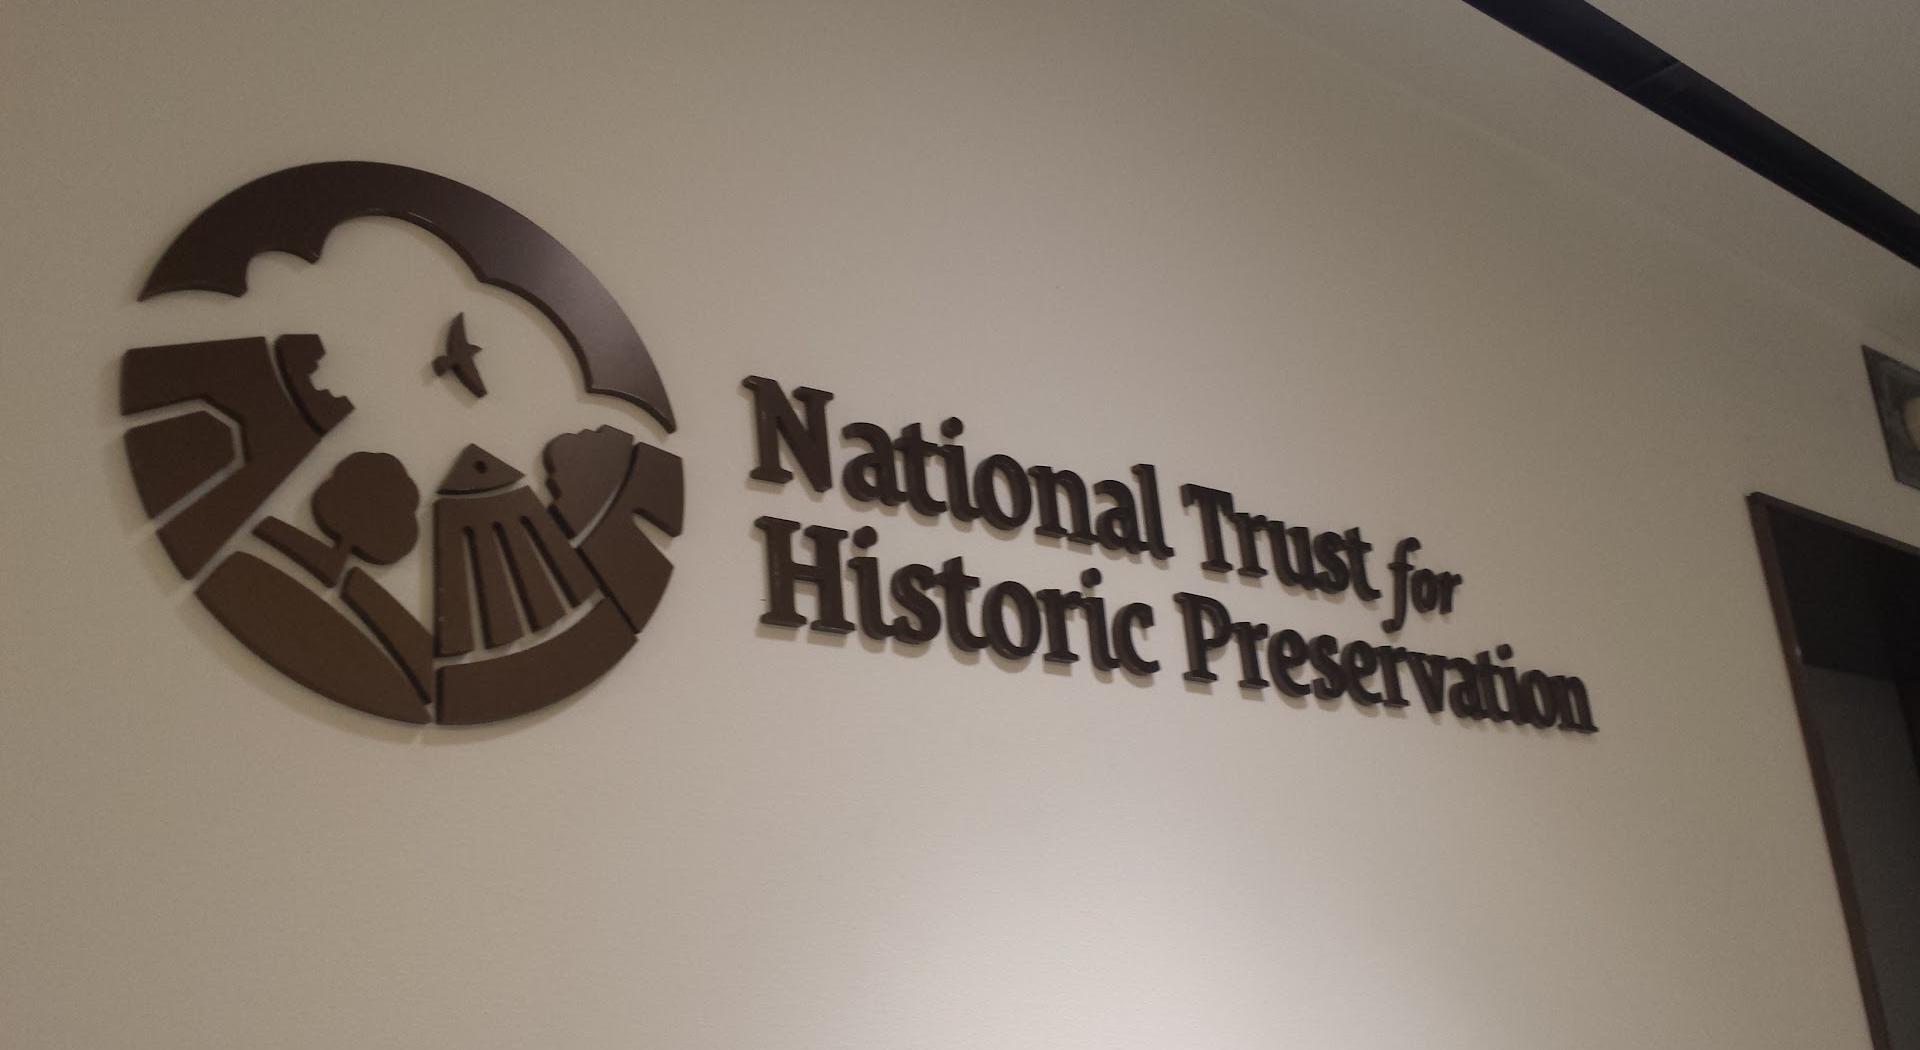 Confiança Nacional para Preservação Histórica